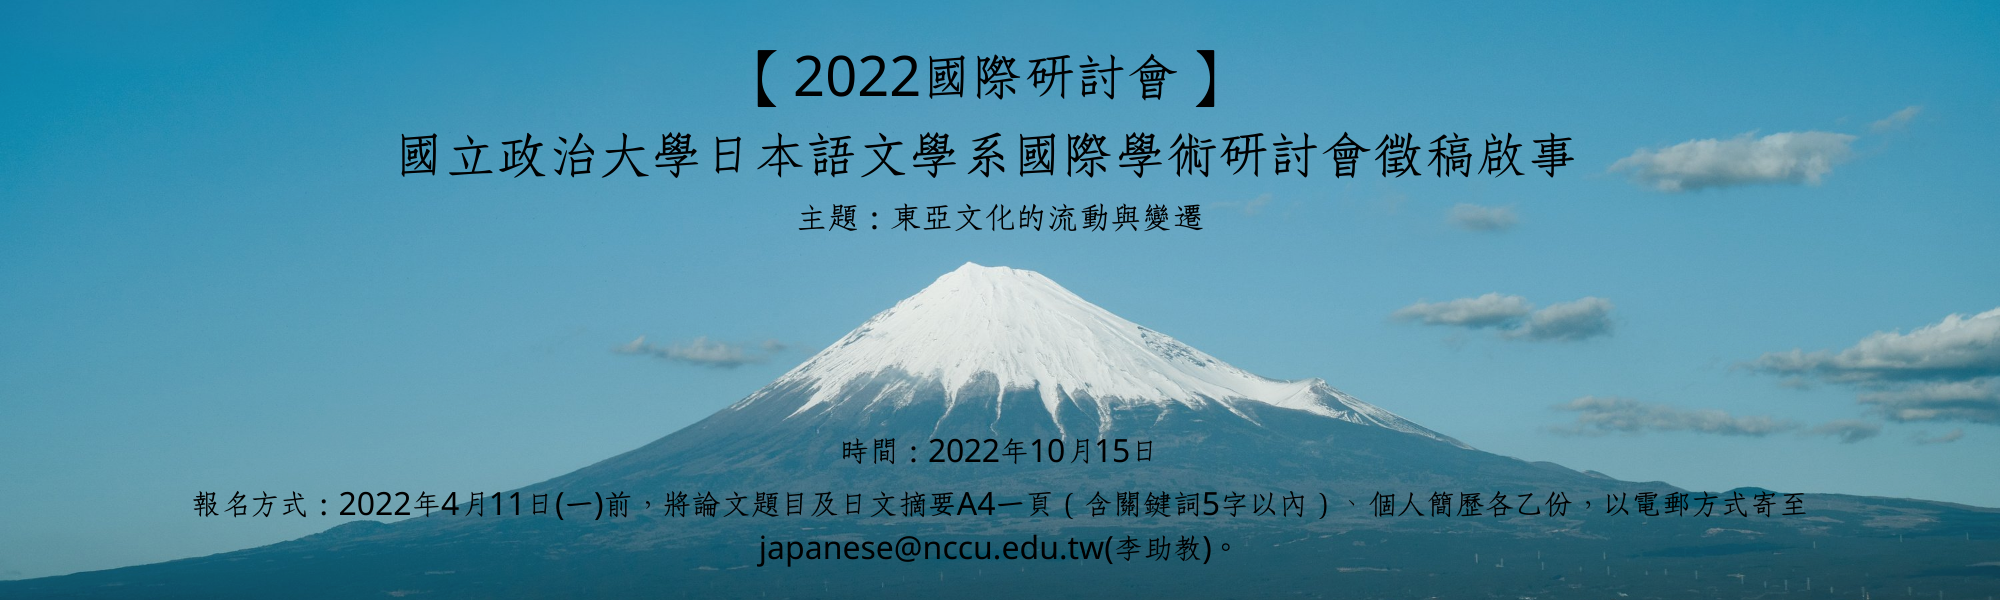 2022研討會